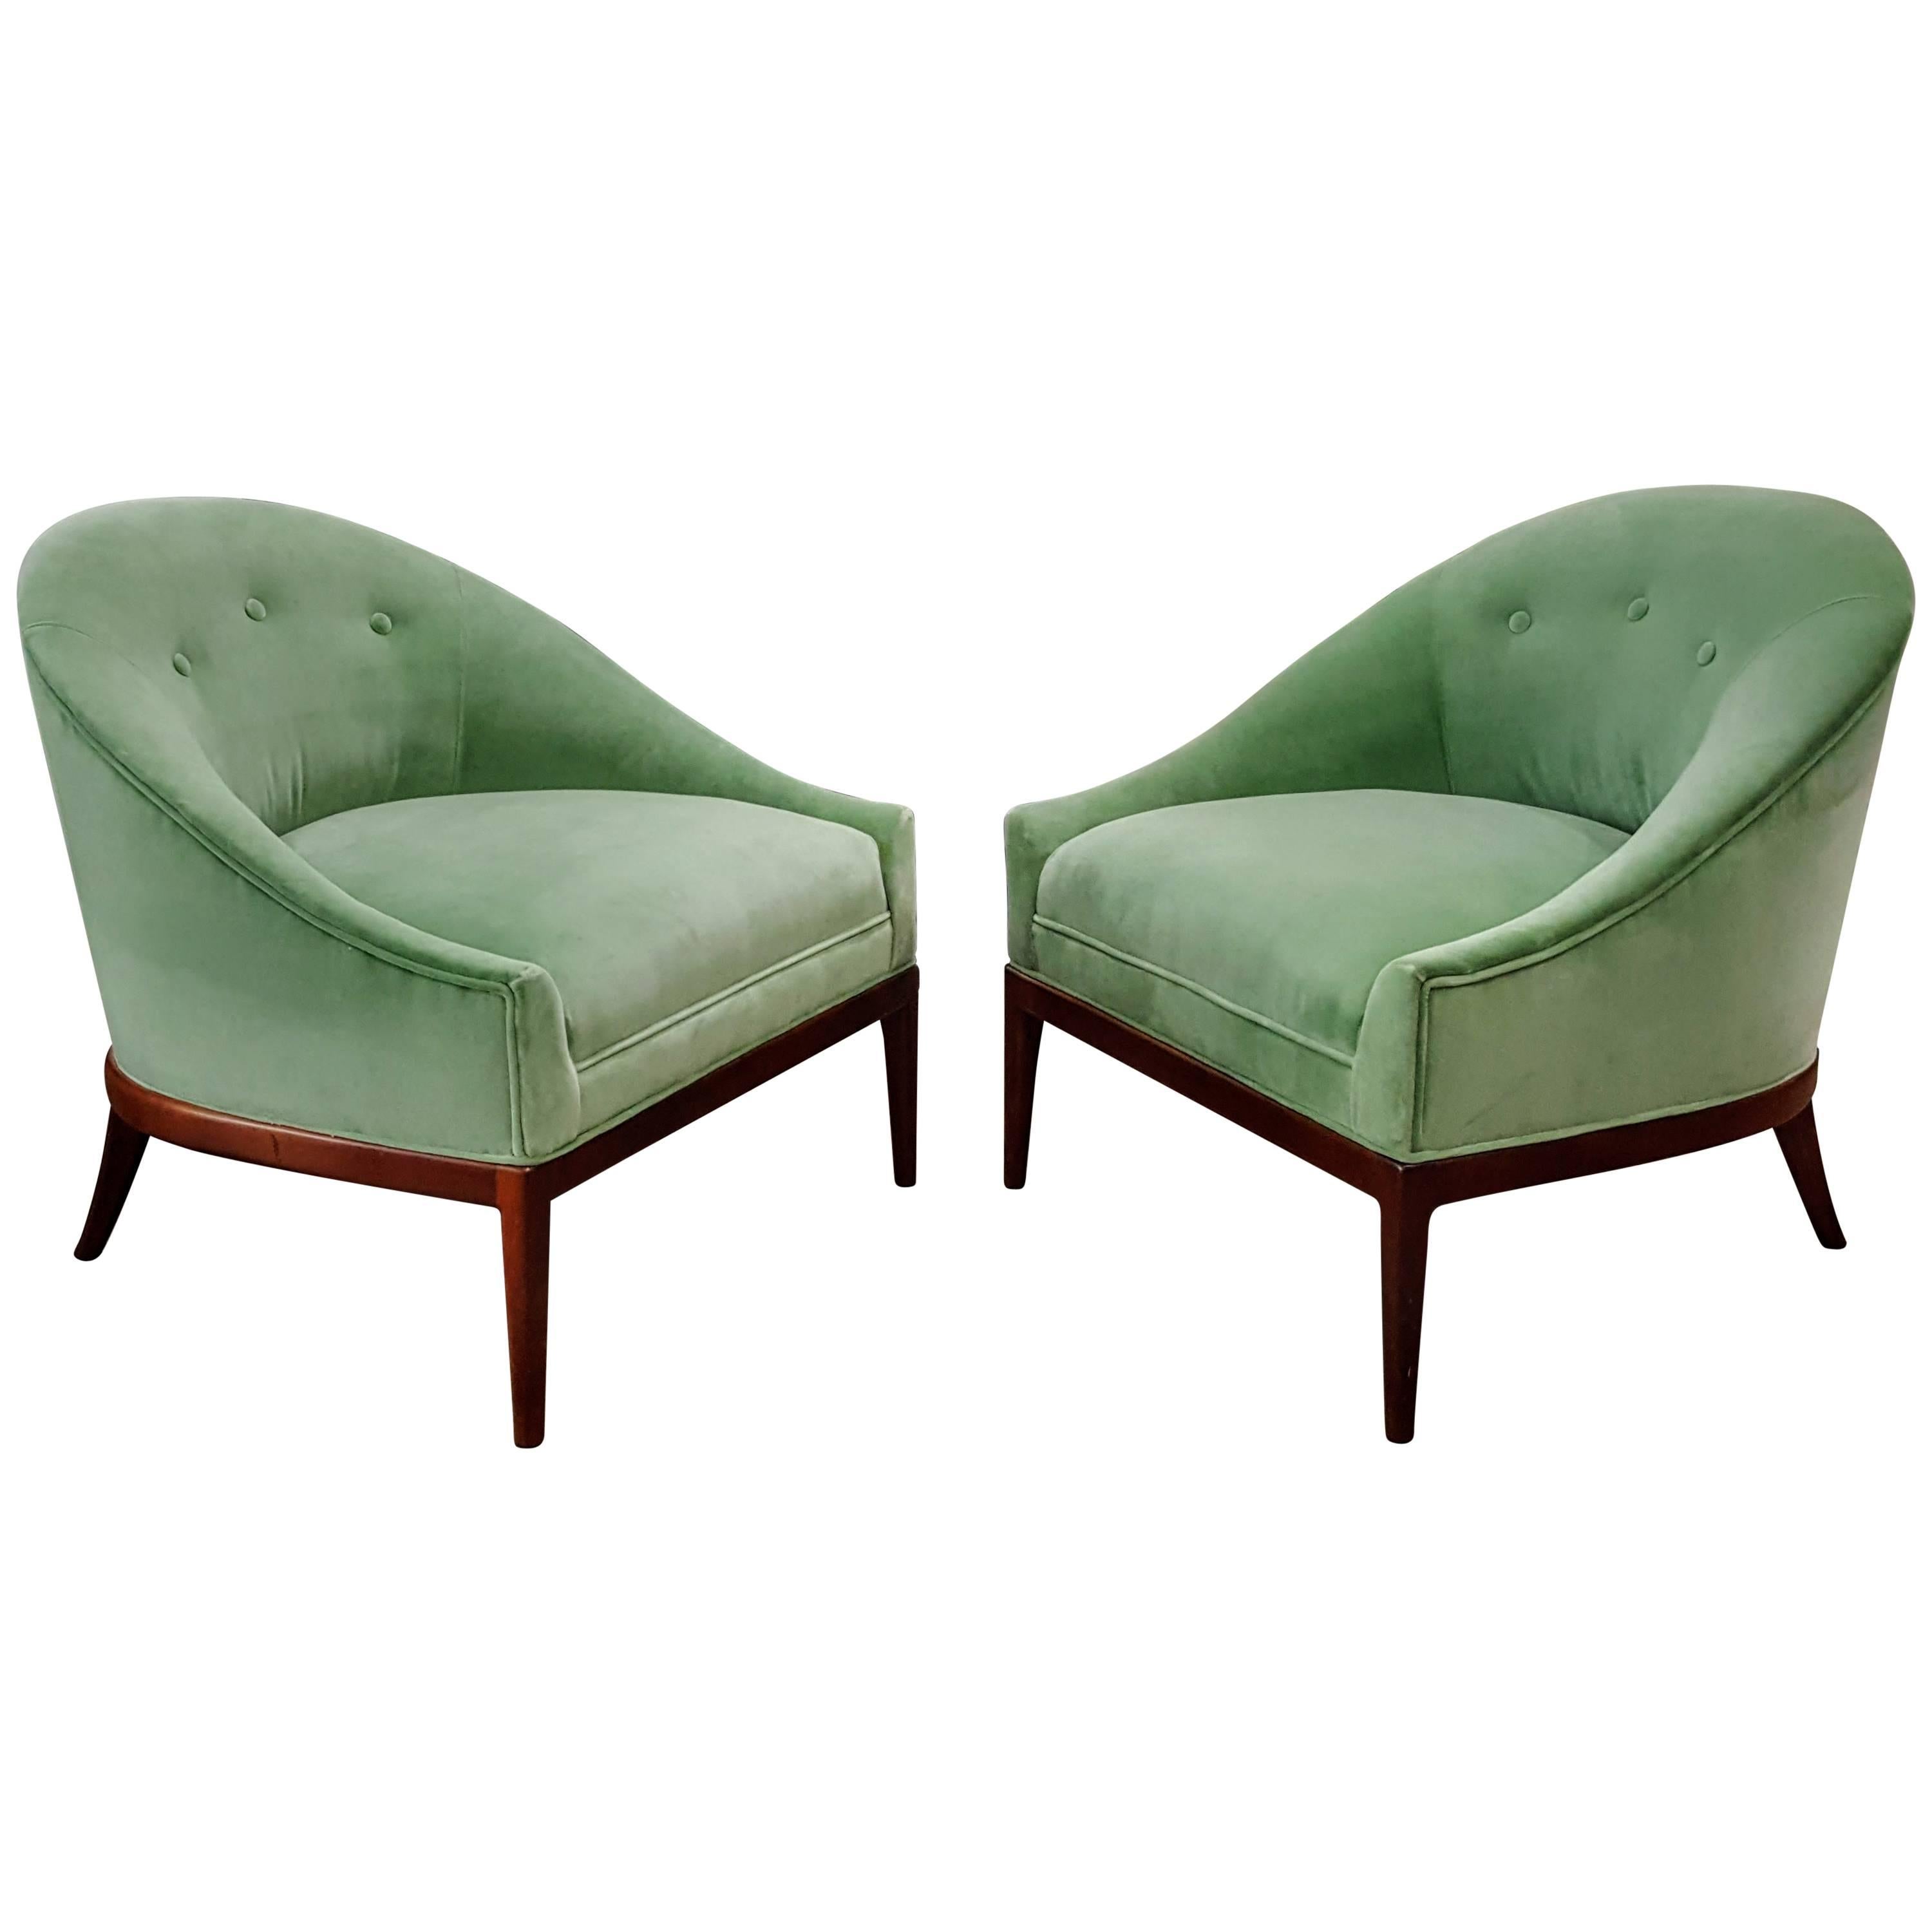 Pair of Modern Slipper Chairs in Celadon Green Velvet, 1960s